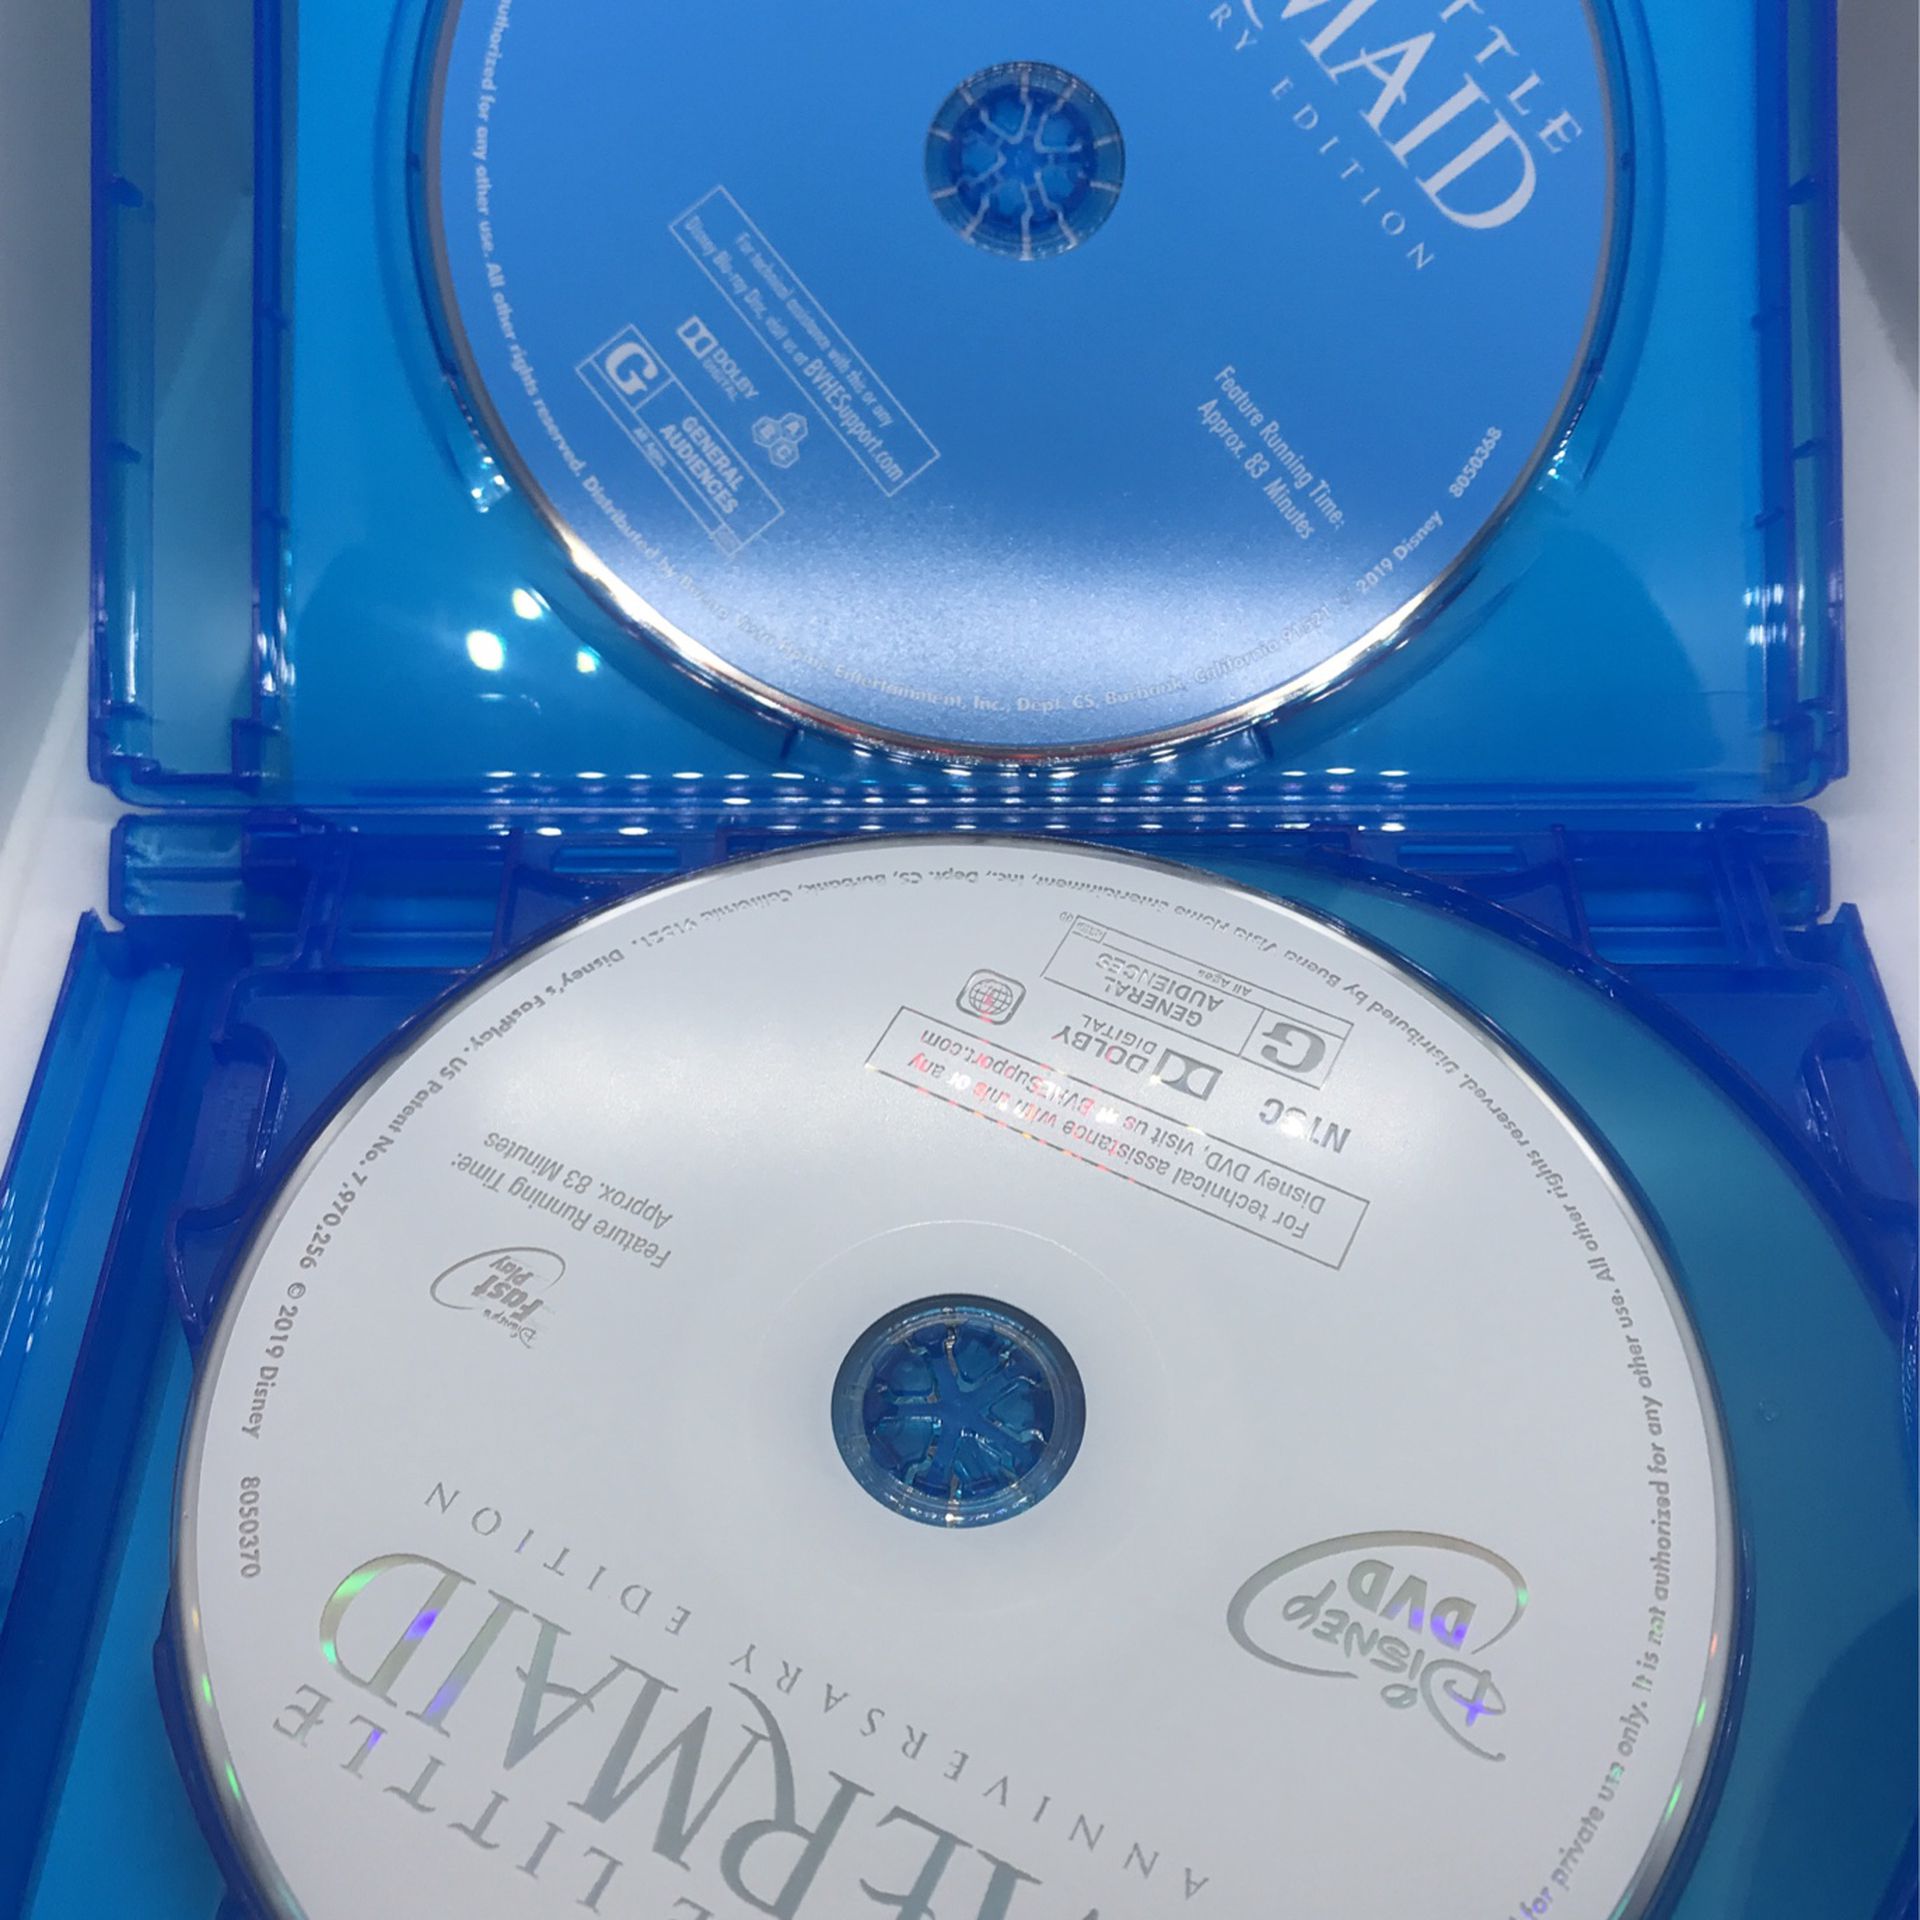 Disney Princess 3 Movie Collection Blu-ray DVD